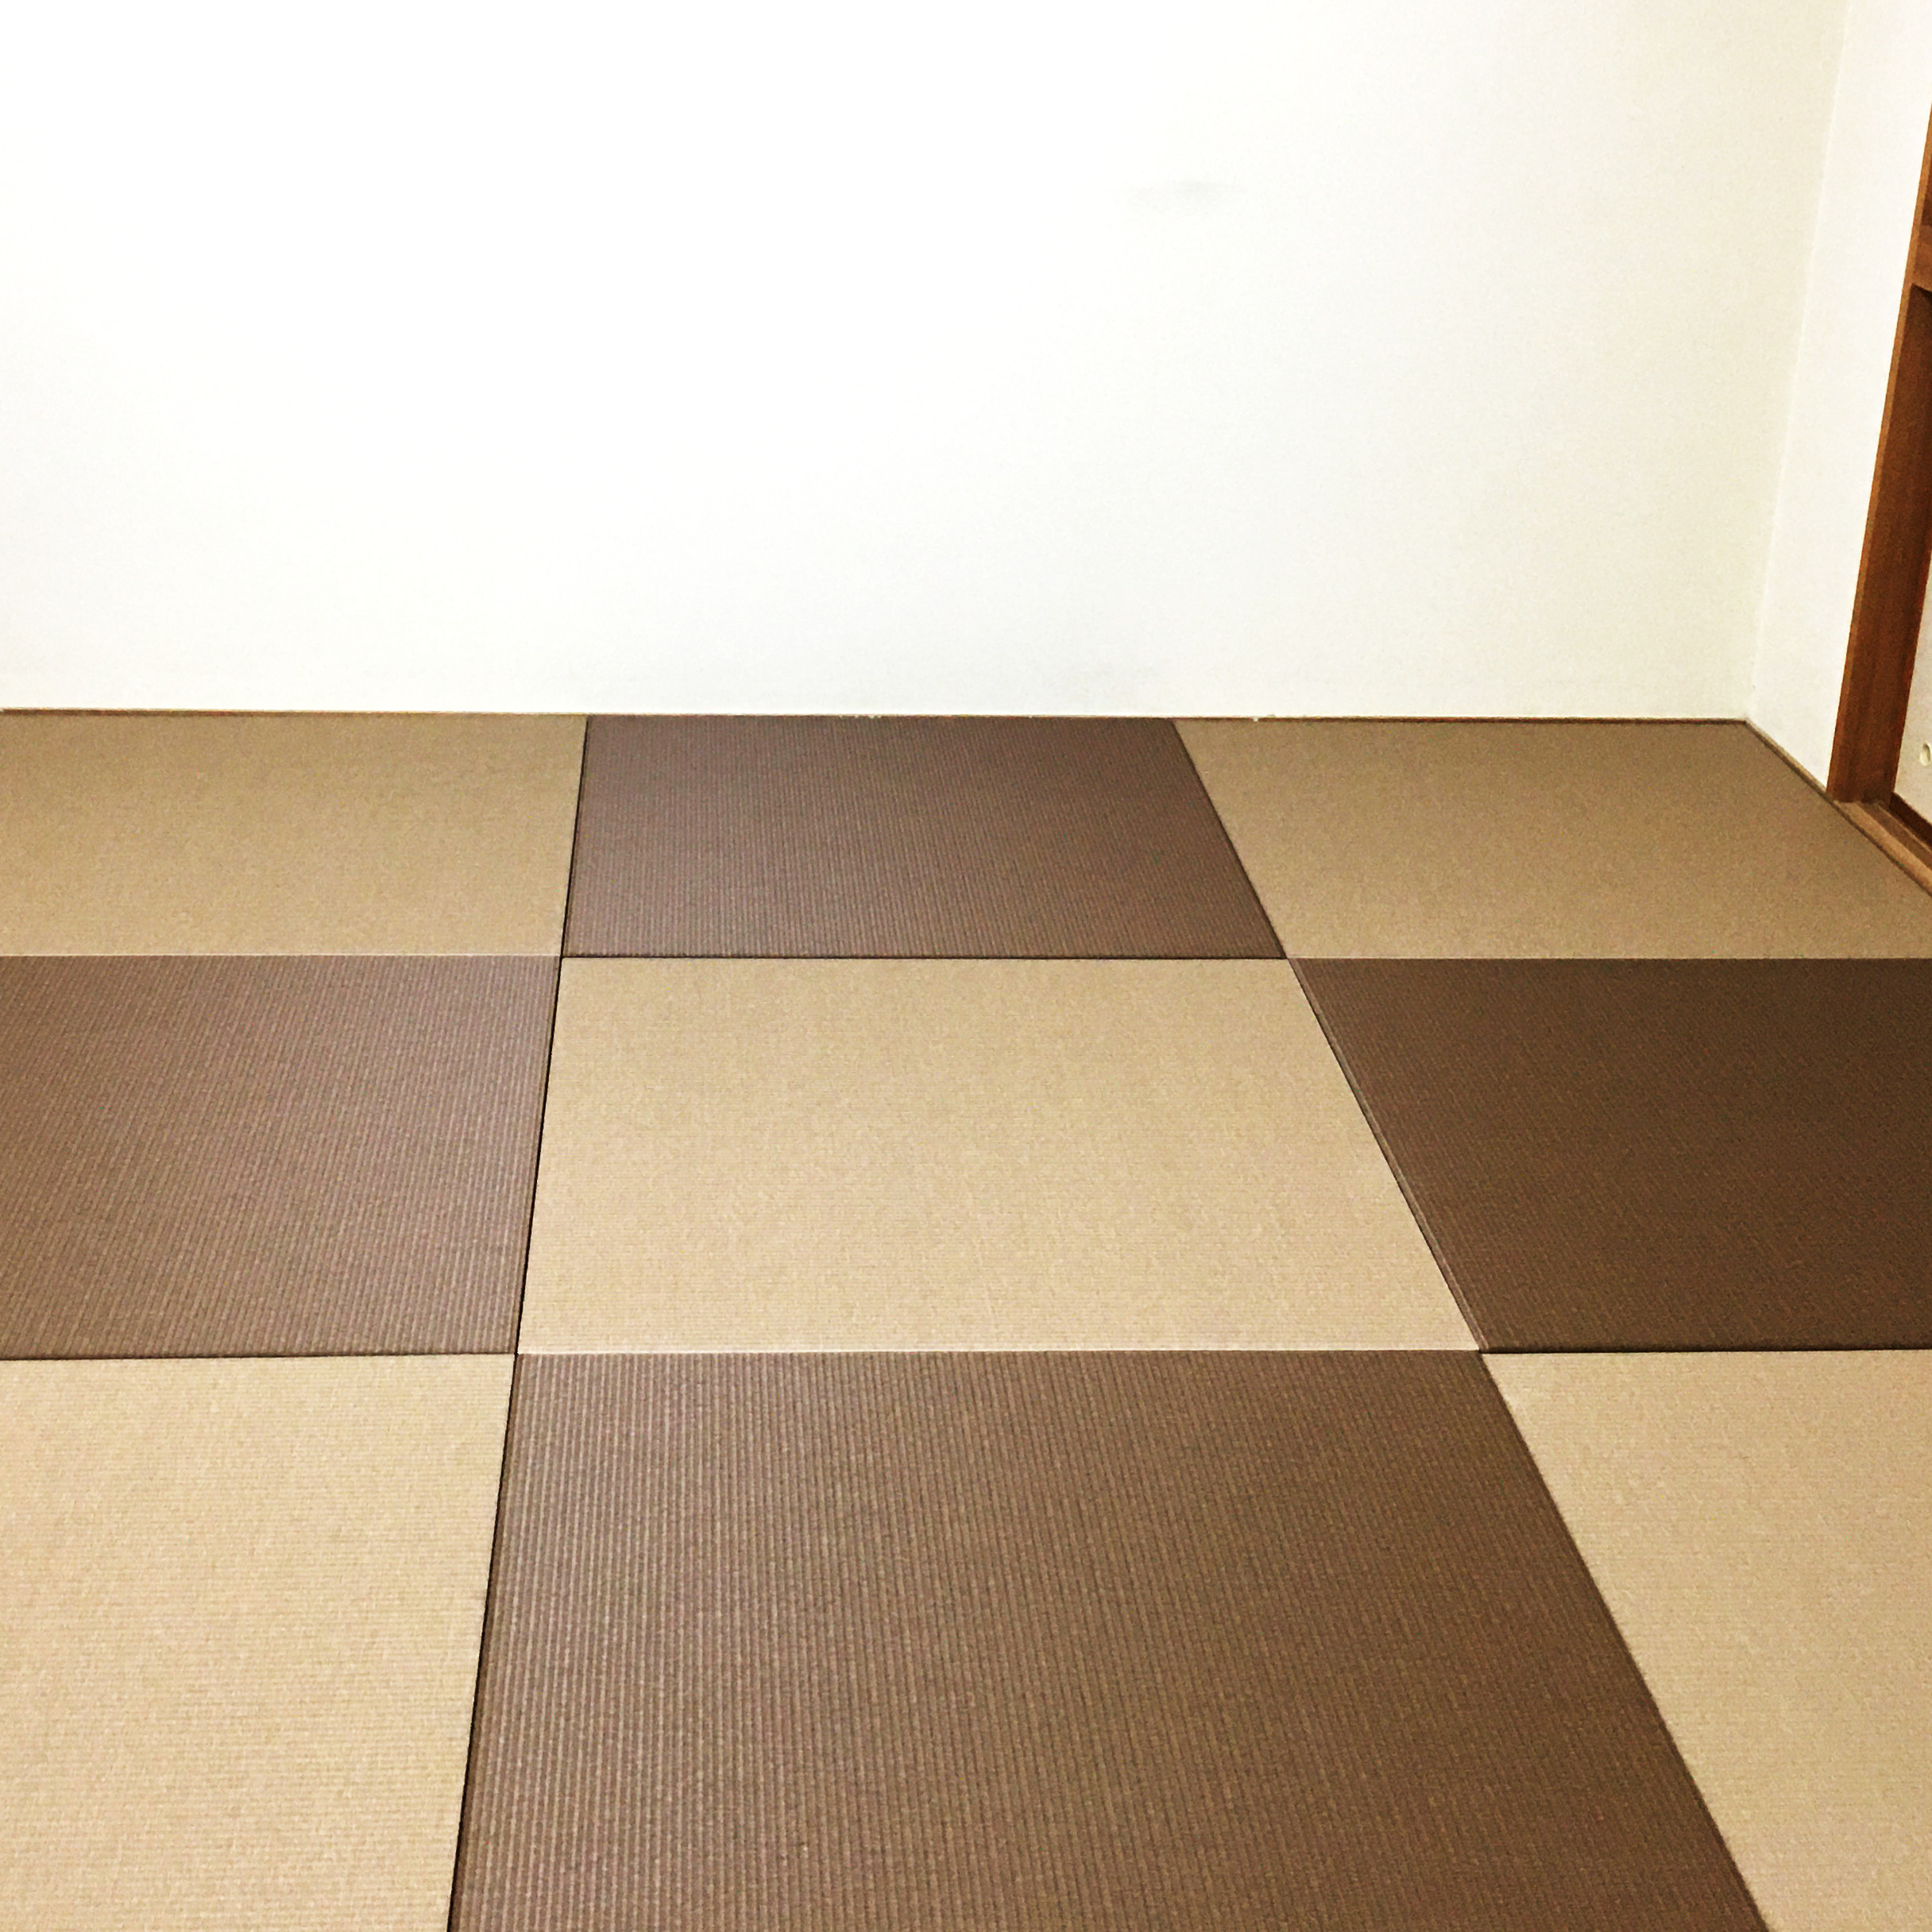 マンションの6畳和室をカラー琉球畳に自分で入れ替える Diyたたみ